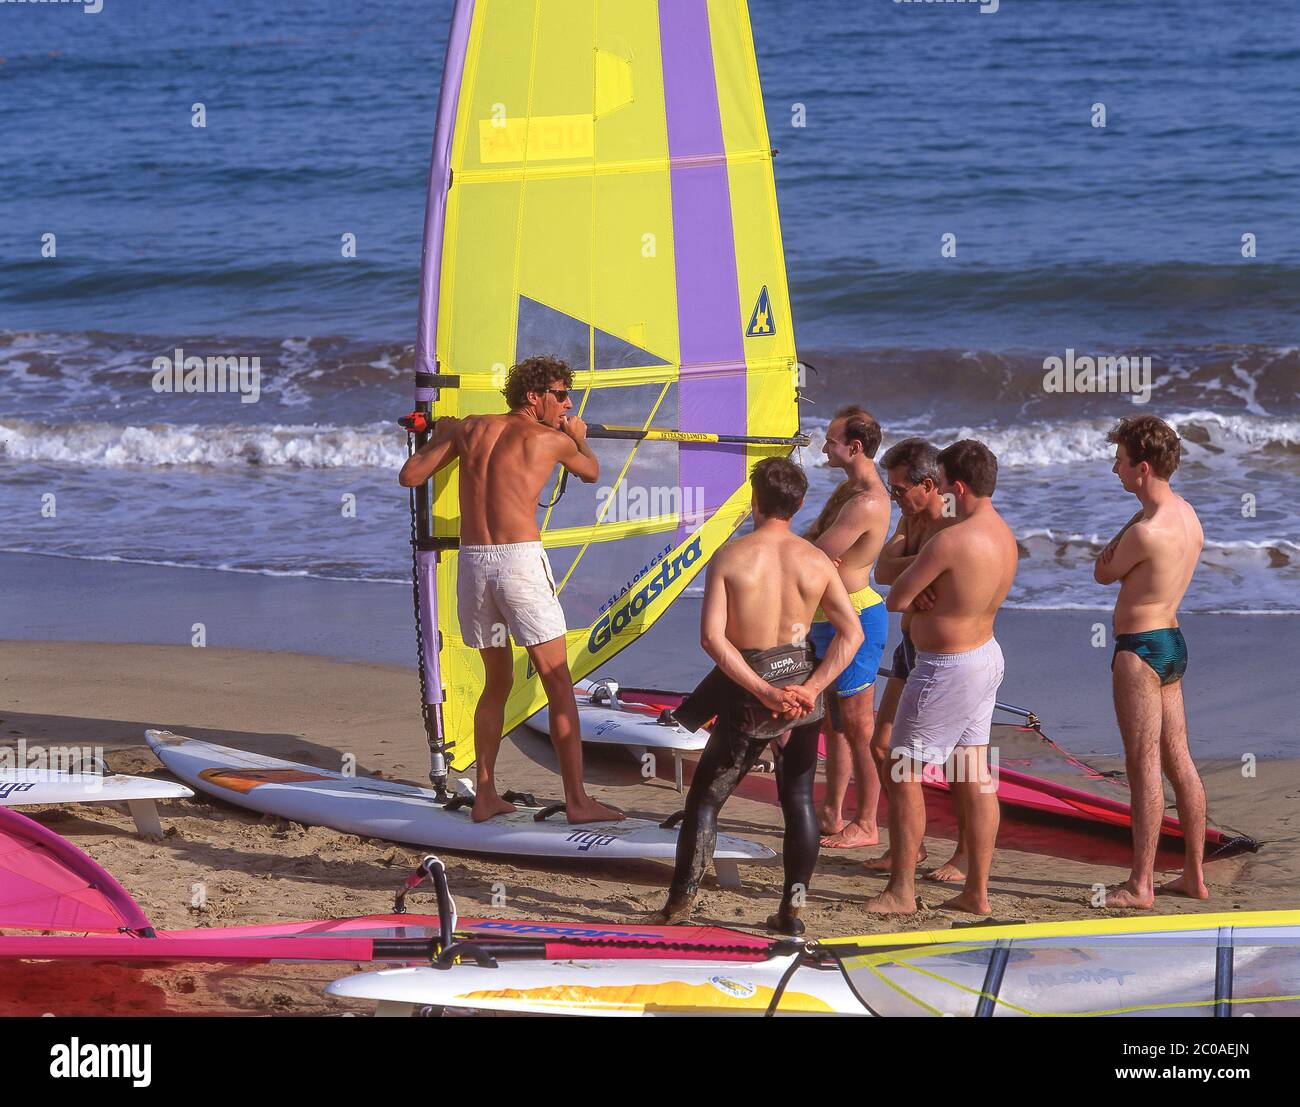 Istruzioni di windsurf, Las Cucharas Beach, Costa Teguise, Lanzarote, Isole Canarie, Spagna Foto Stock